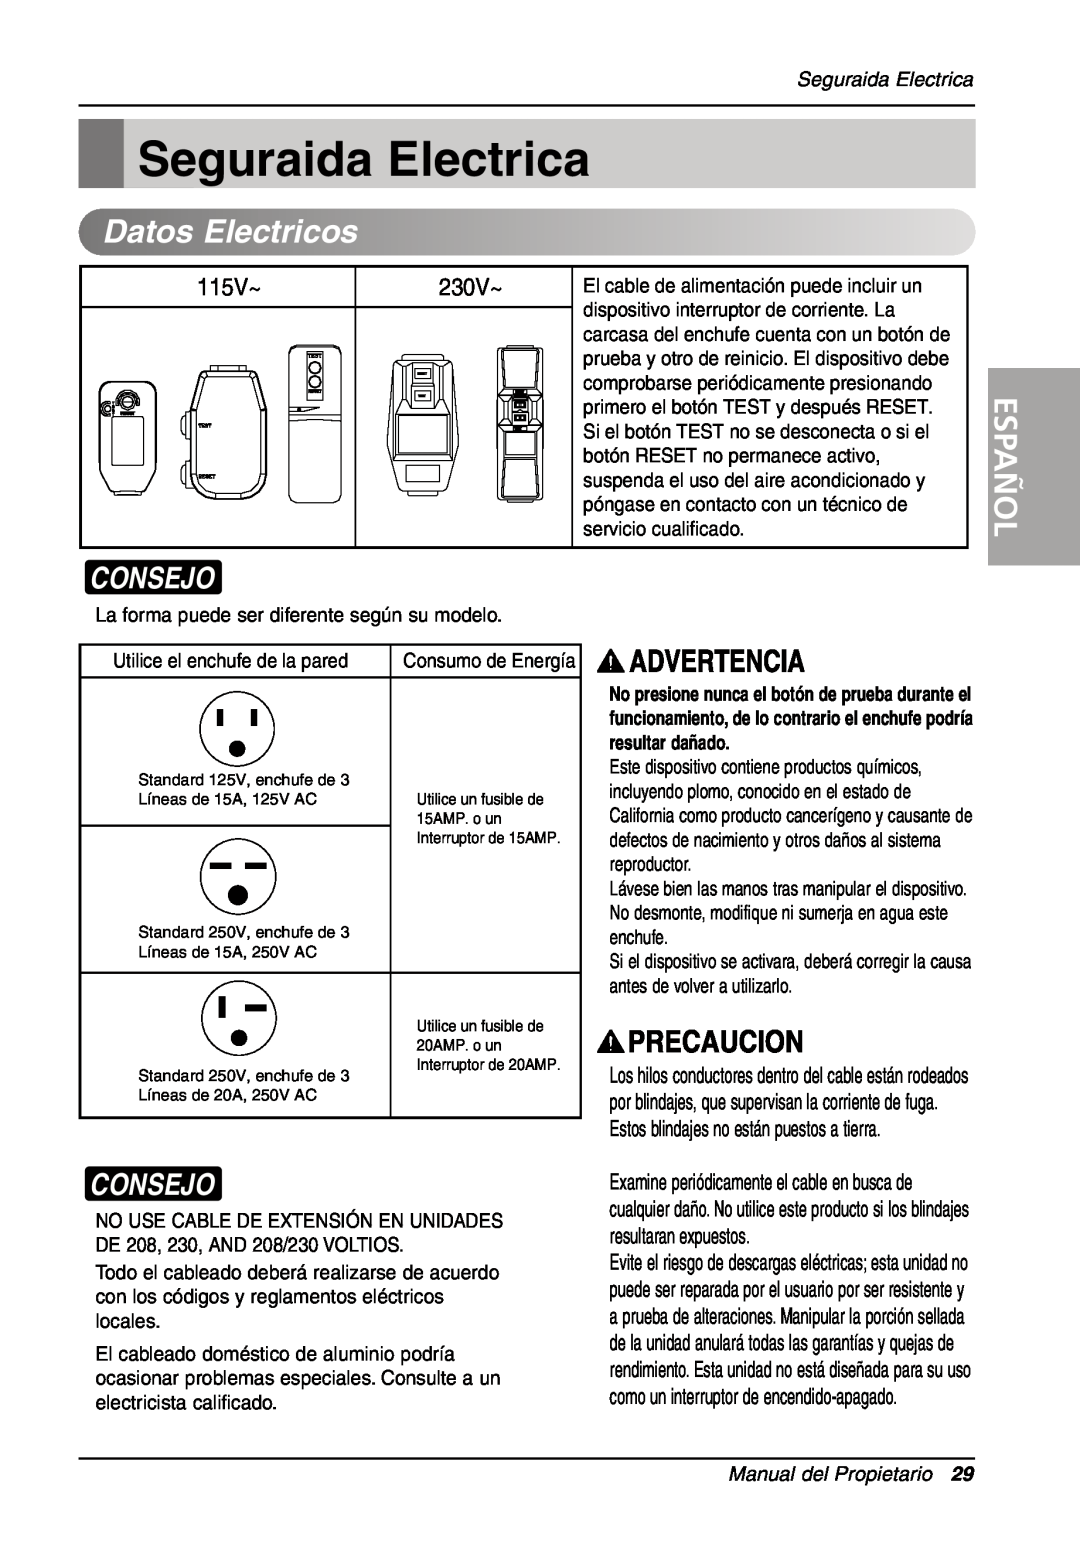 LG Electronics LW701 HR owner manual Seguraida Electrica, Consejo, Español, Manual del Propietario, Datos, Electricos 